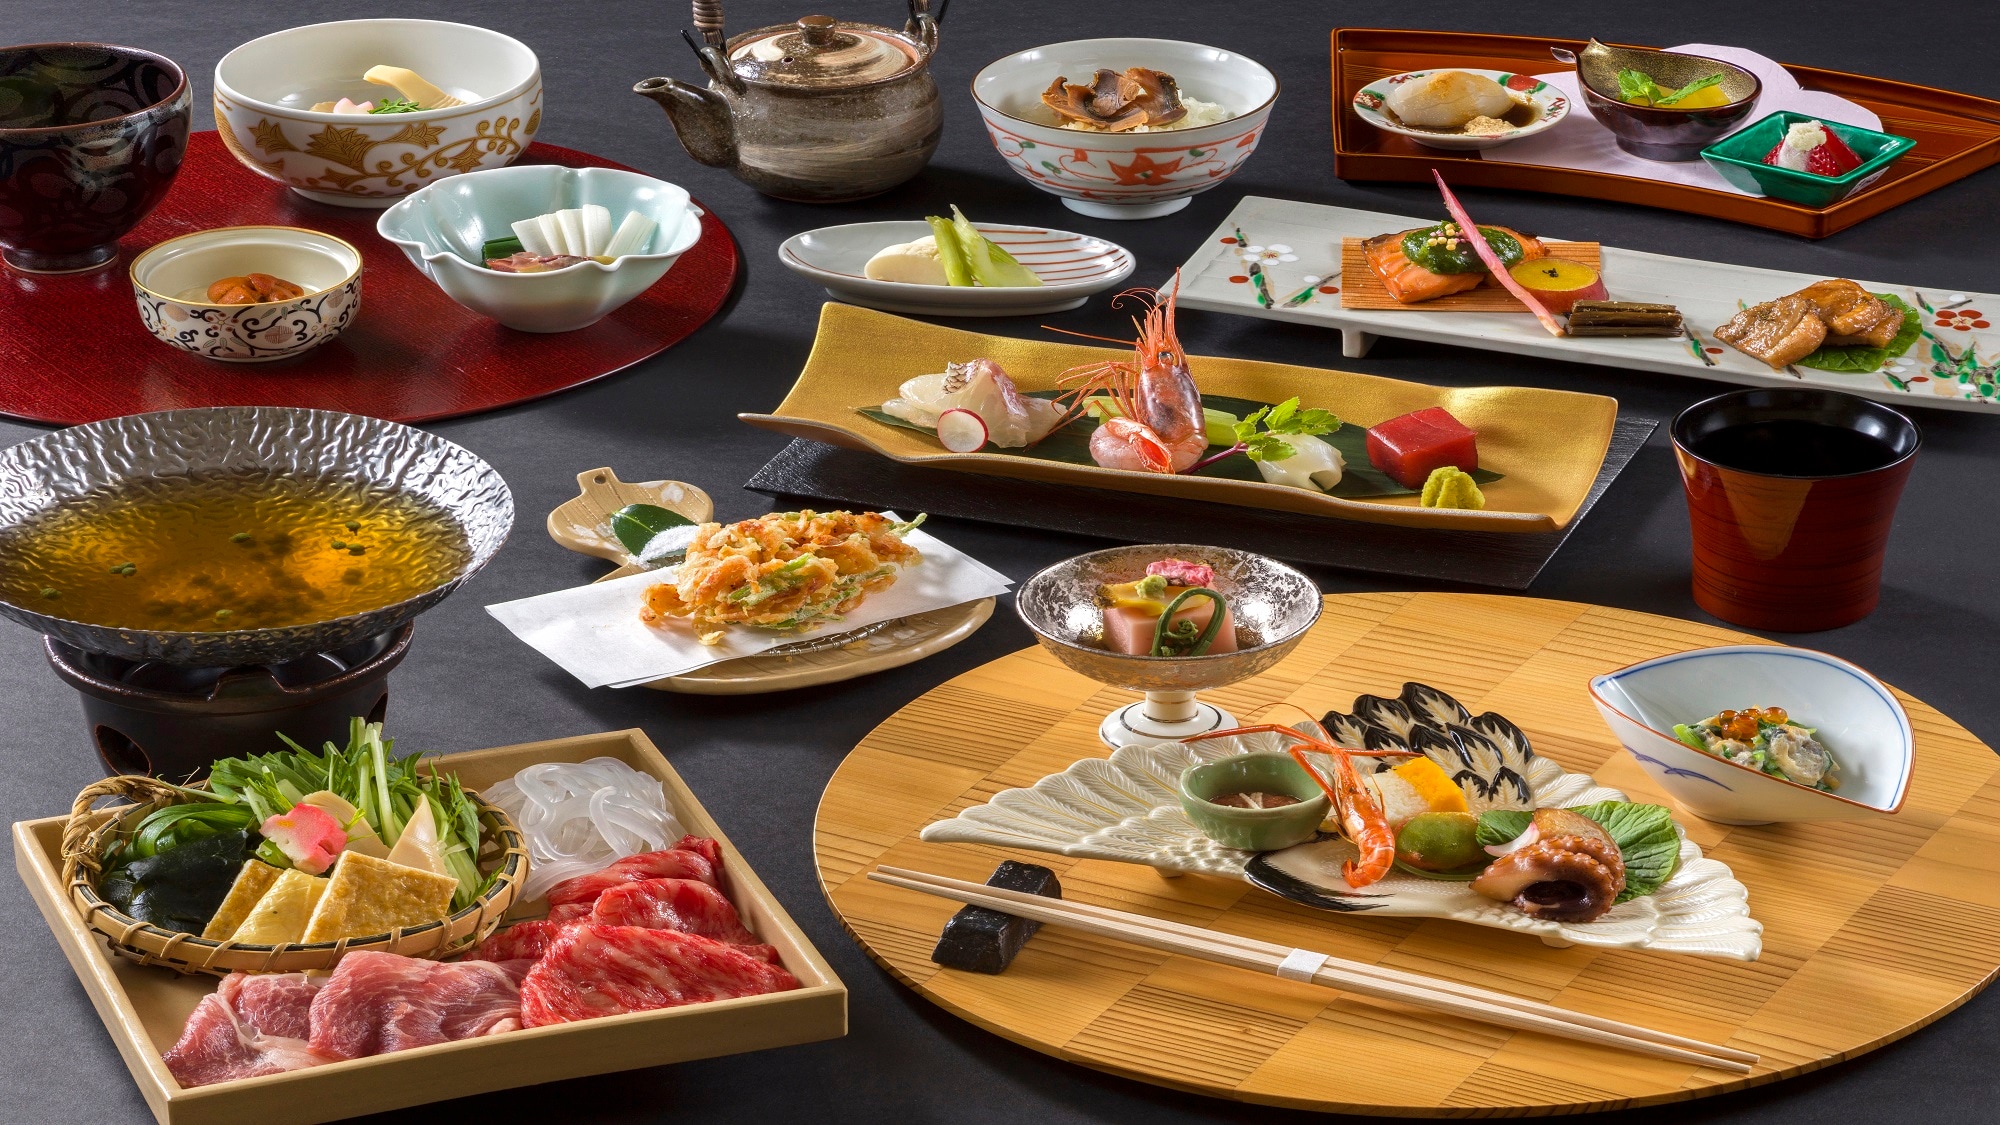 ※イメージ画像【夕食】季節にあわせた献立と、京都ならではの食材を生かした彩豊かな会席料理。